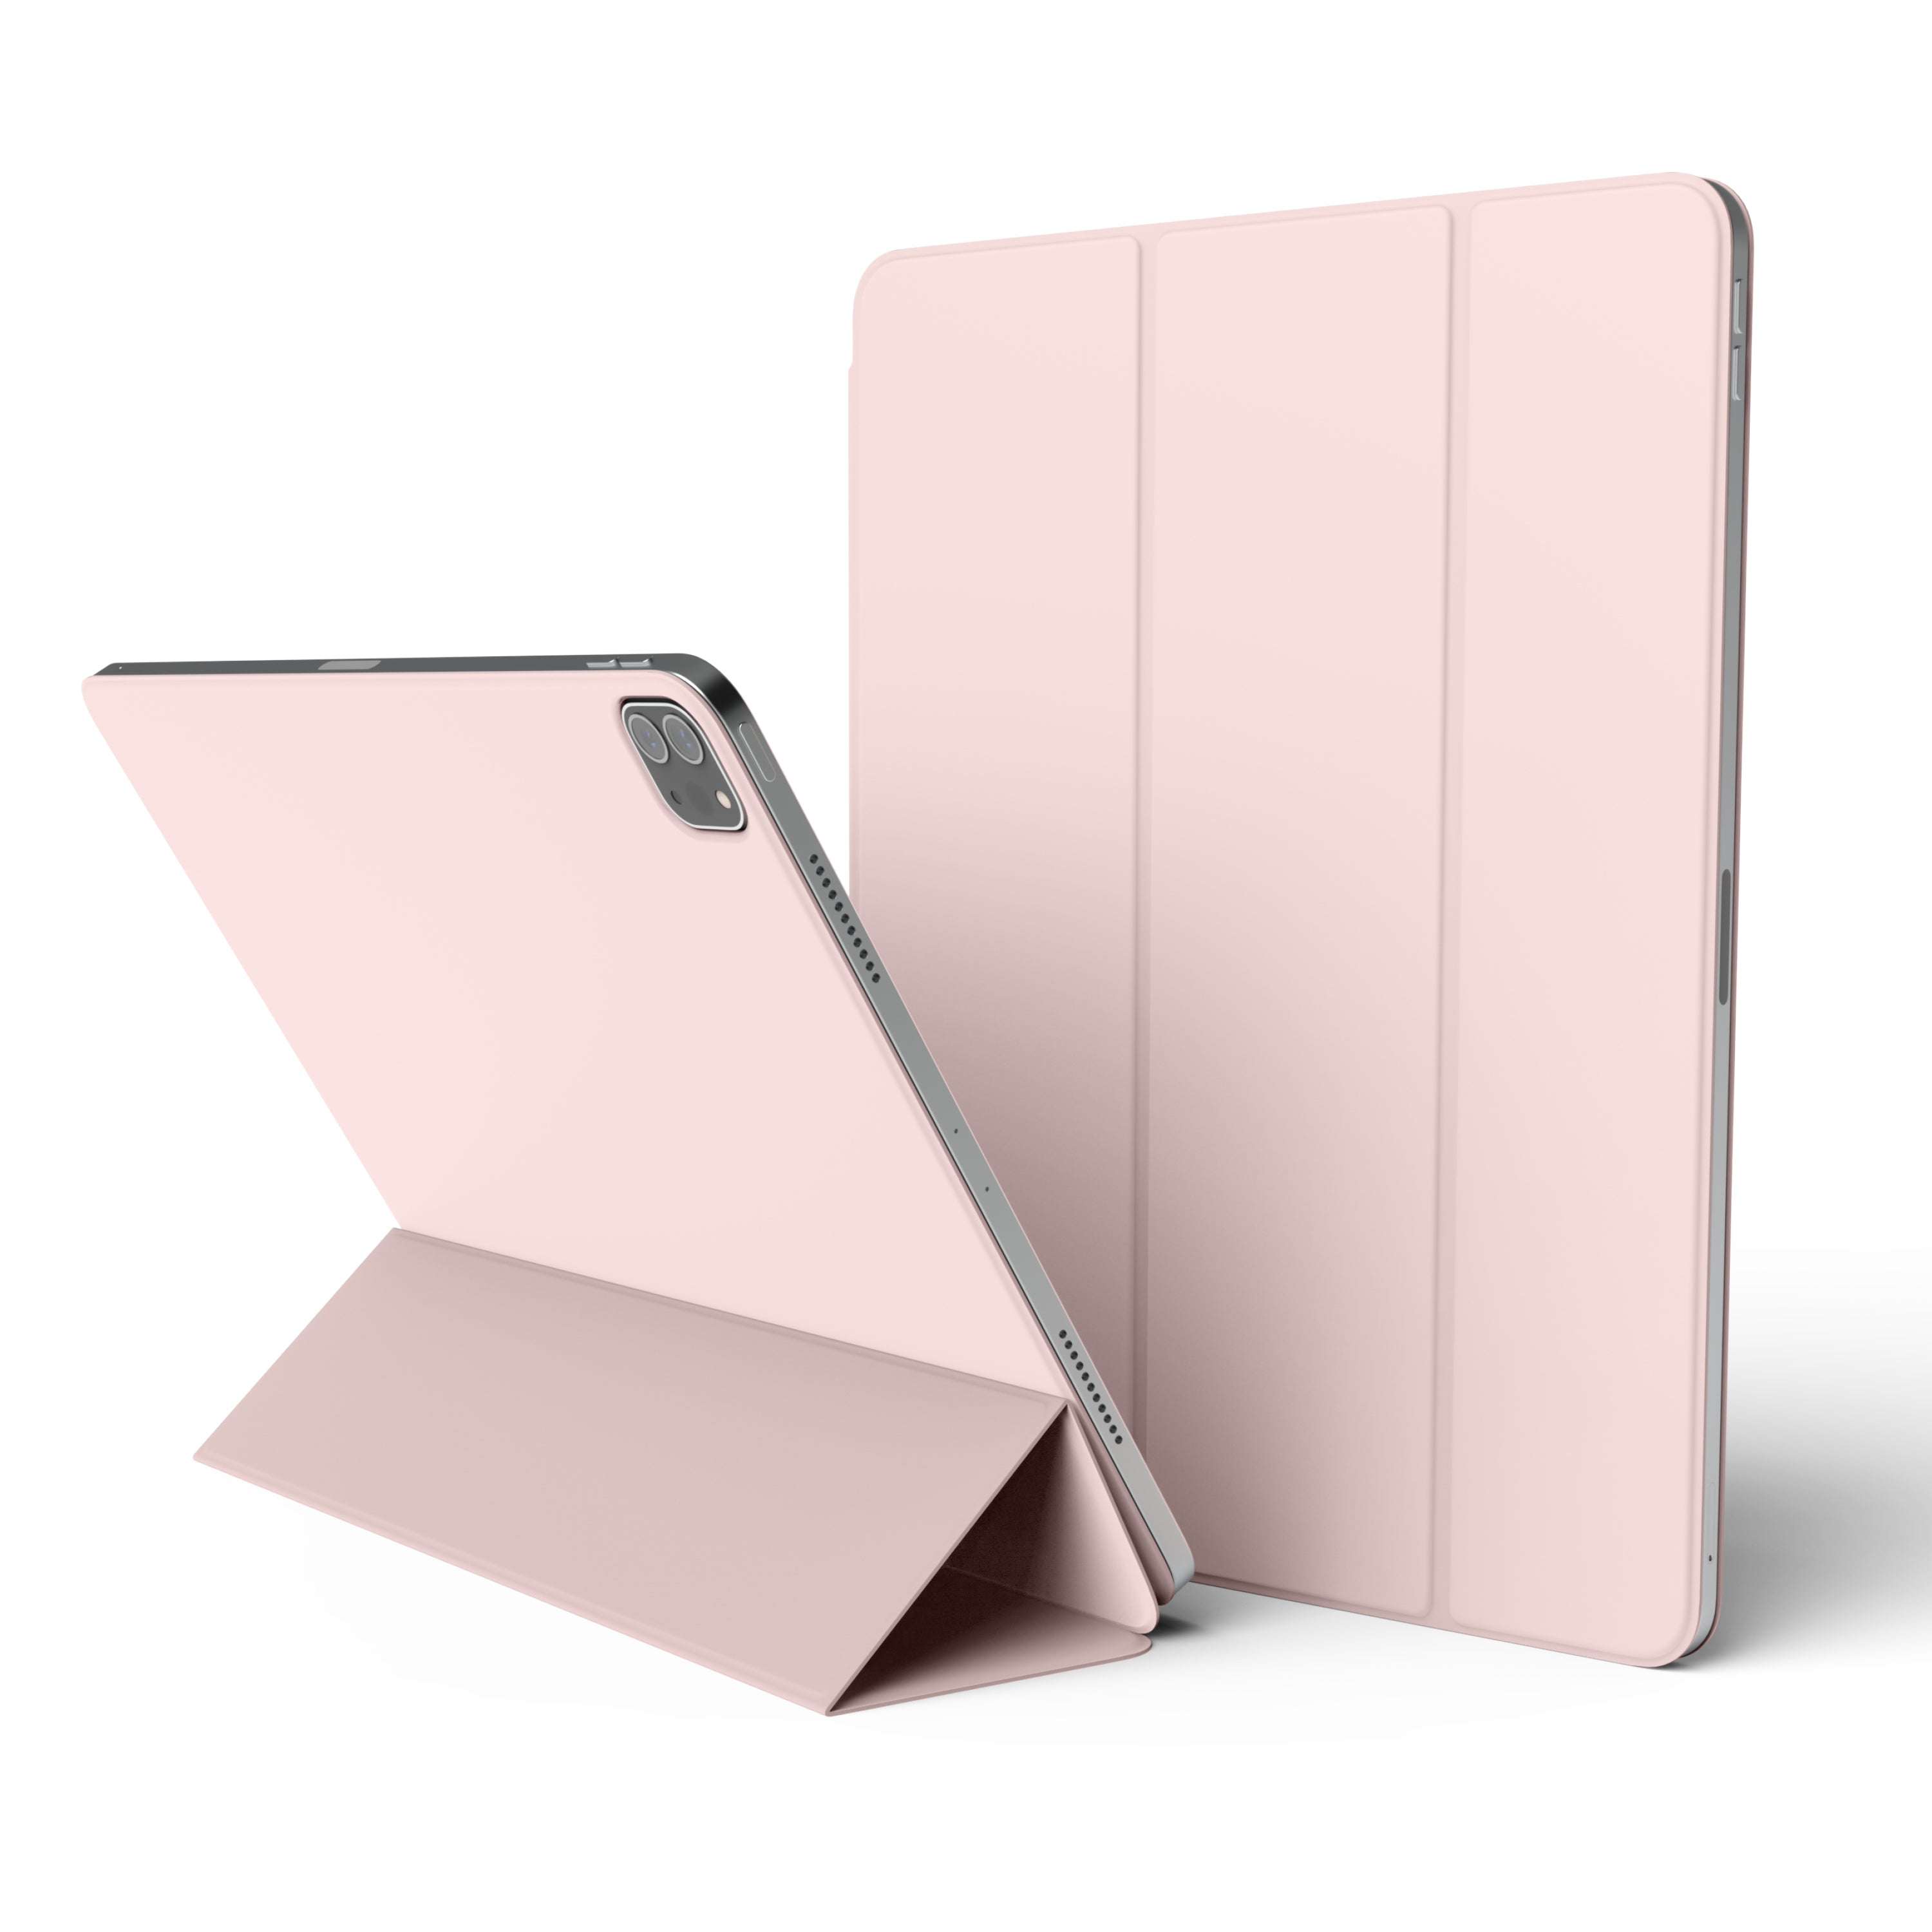 iPad Pro 12.9 inch Smart Folio Case for iPad Pro 4th, 5th [3 Colors]